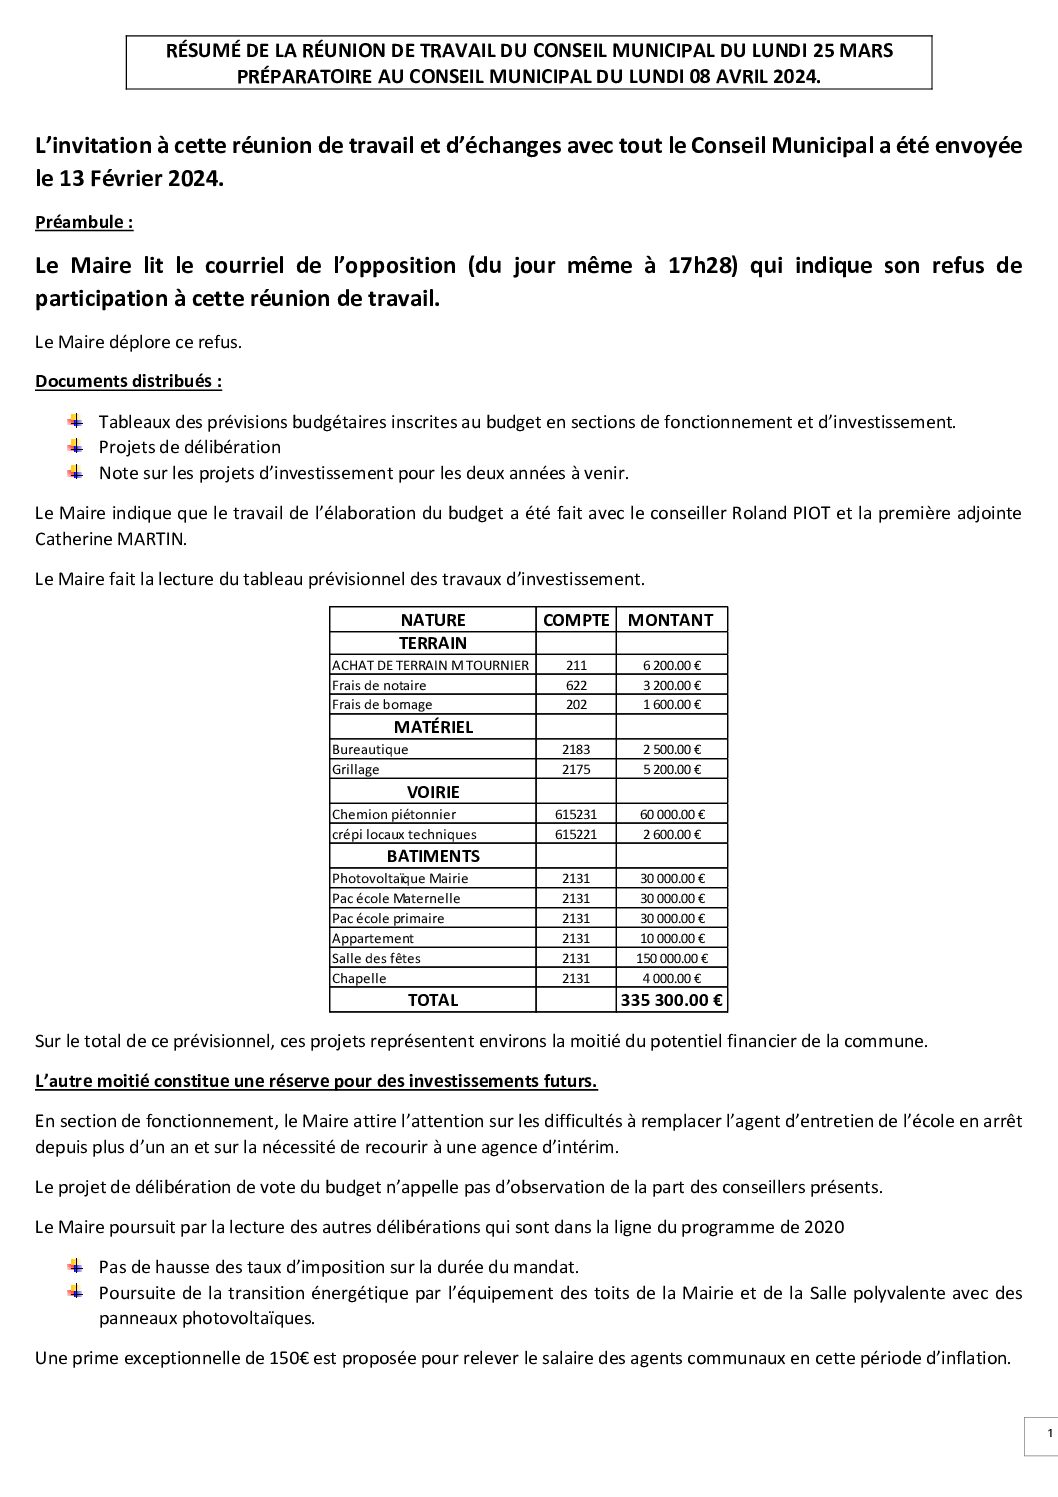 Compte rendu de Réunion préparatoire du 25 Mars 2024